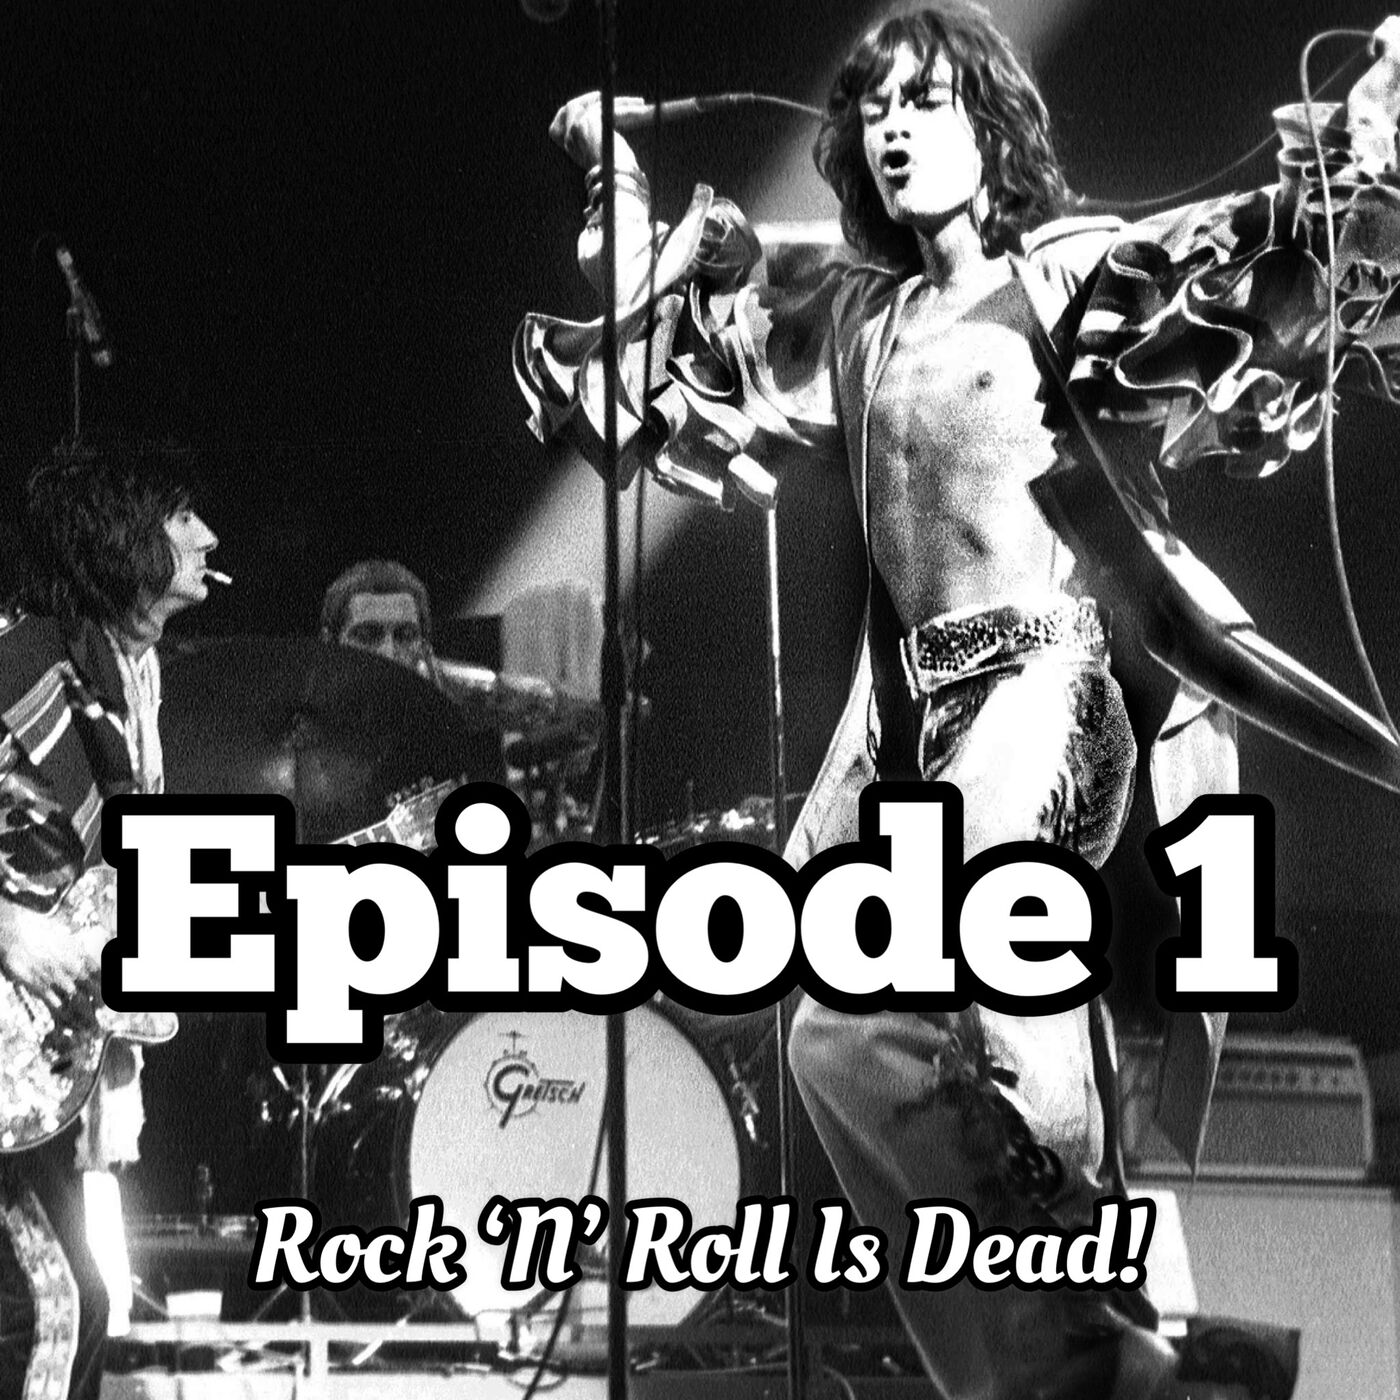 1. Rock 'N' Roll Is Dead!